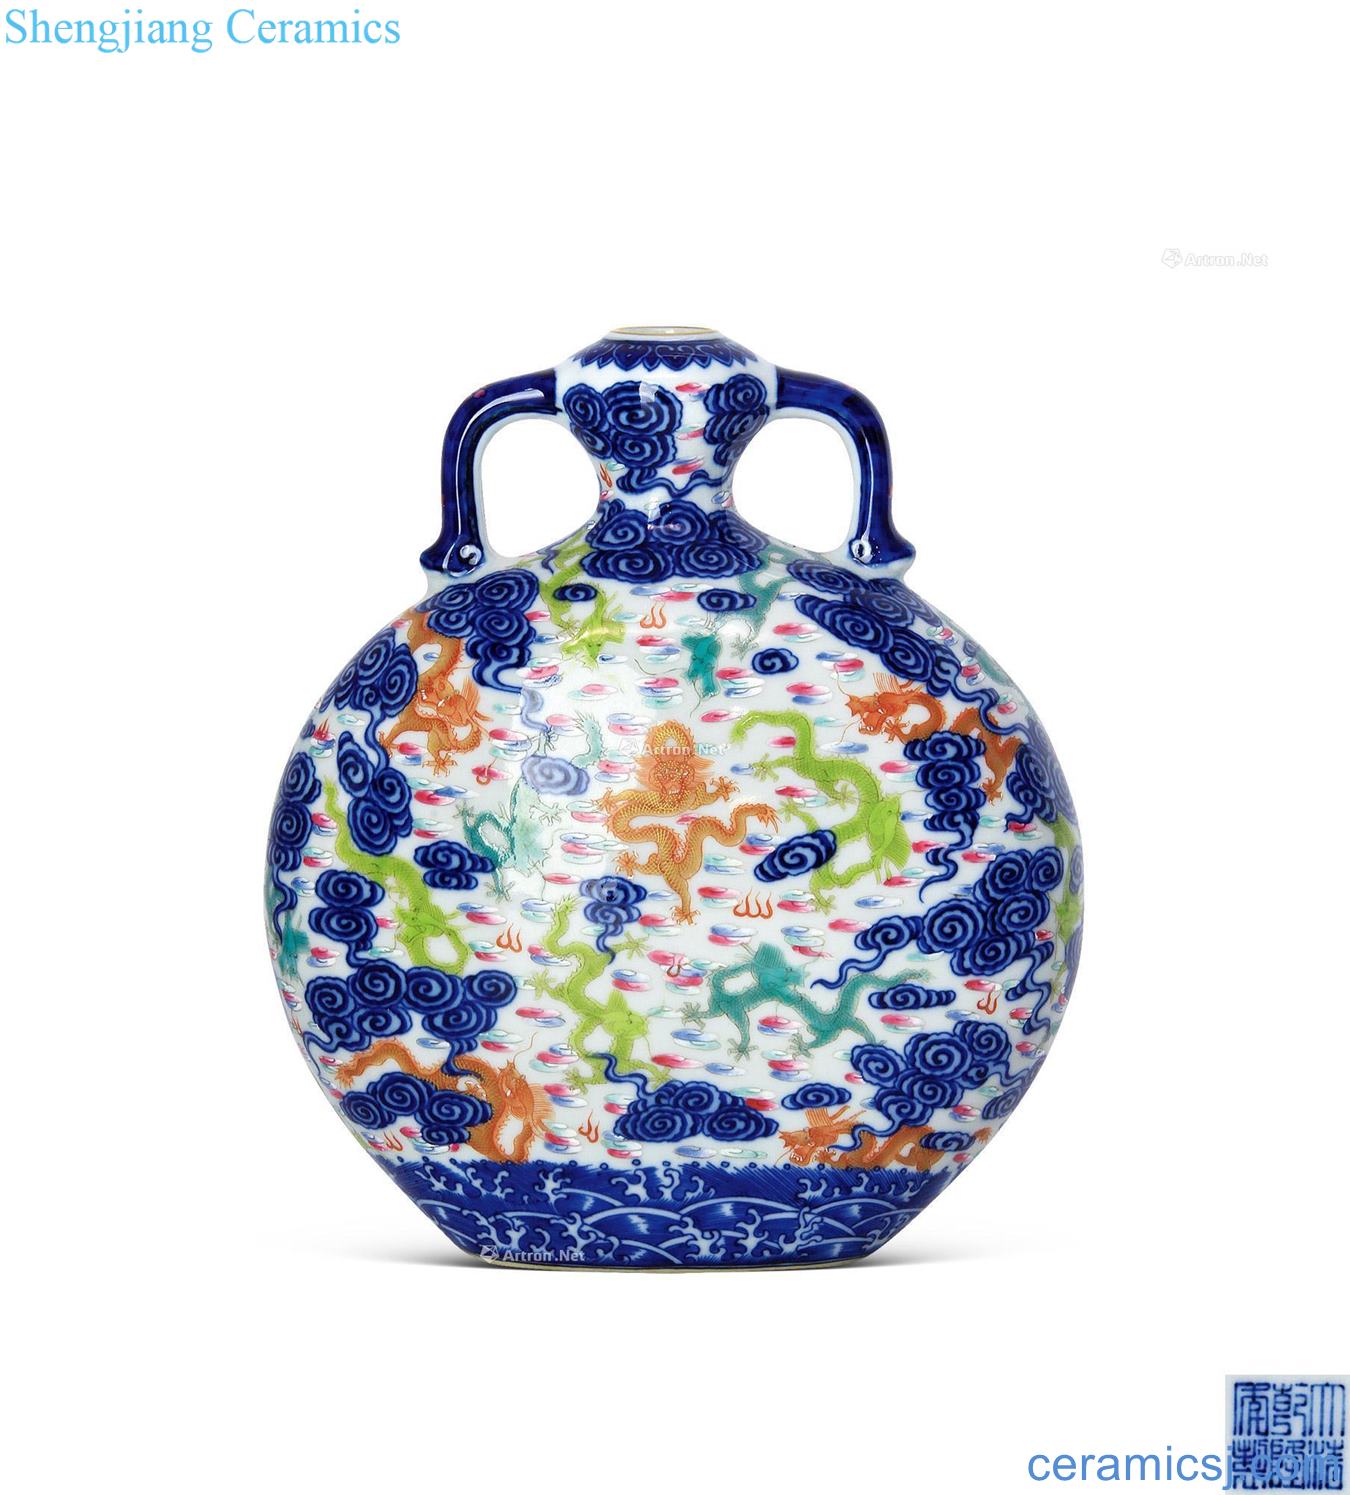 Qianlong porcelain enamel YunLongWen binaural pot